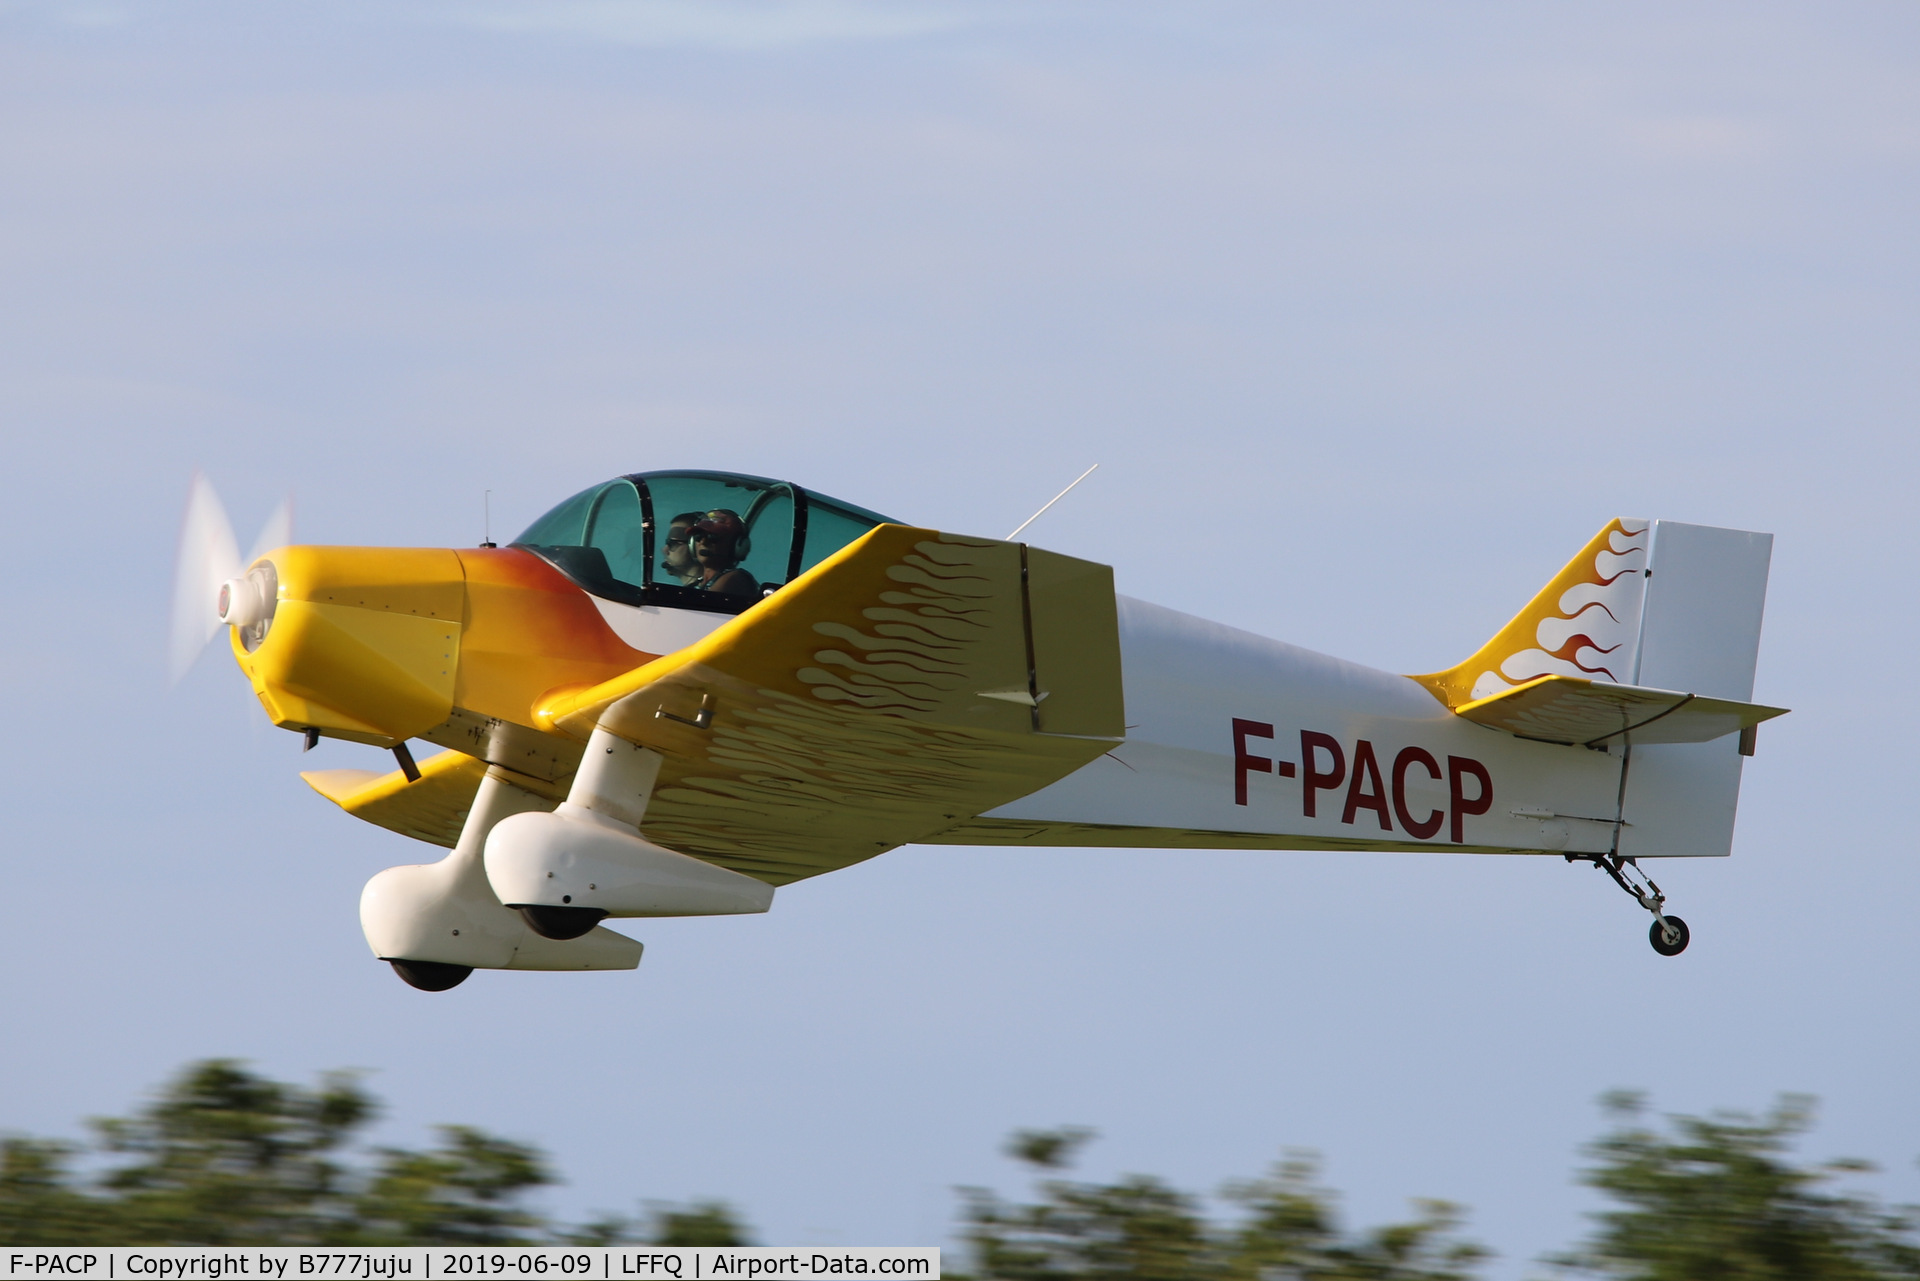 F-PACP, 2005 Jodel D-113 C/N 1812, at La Ferté-Alais